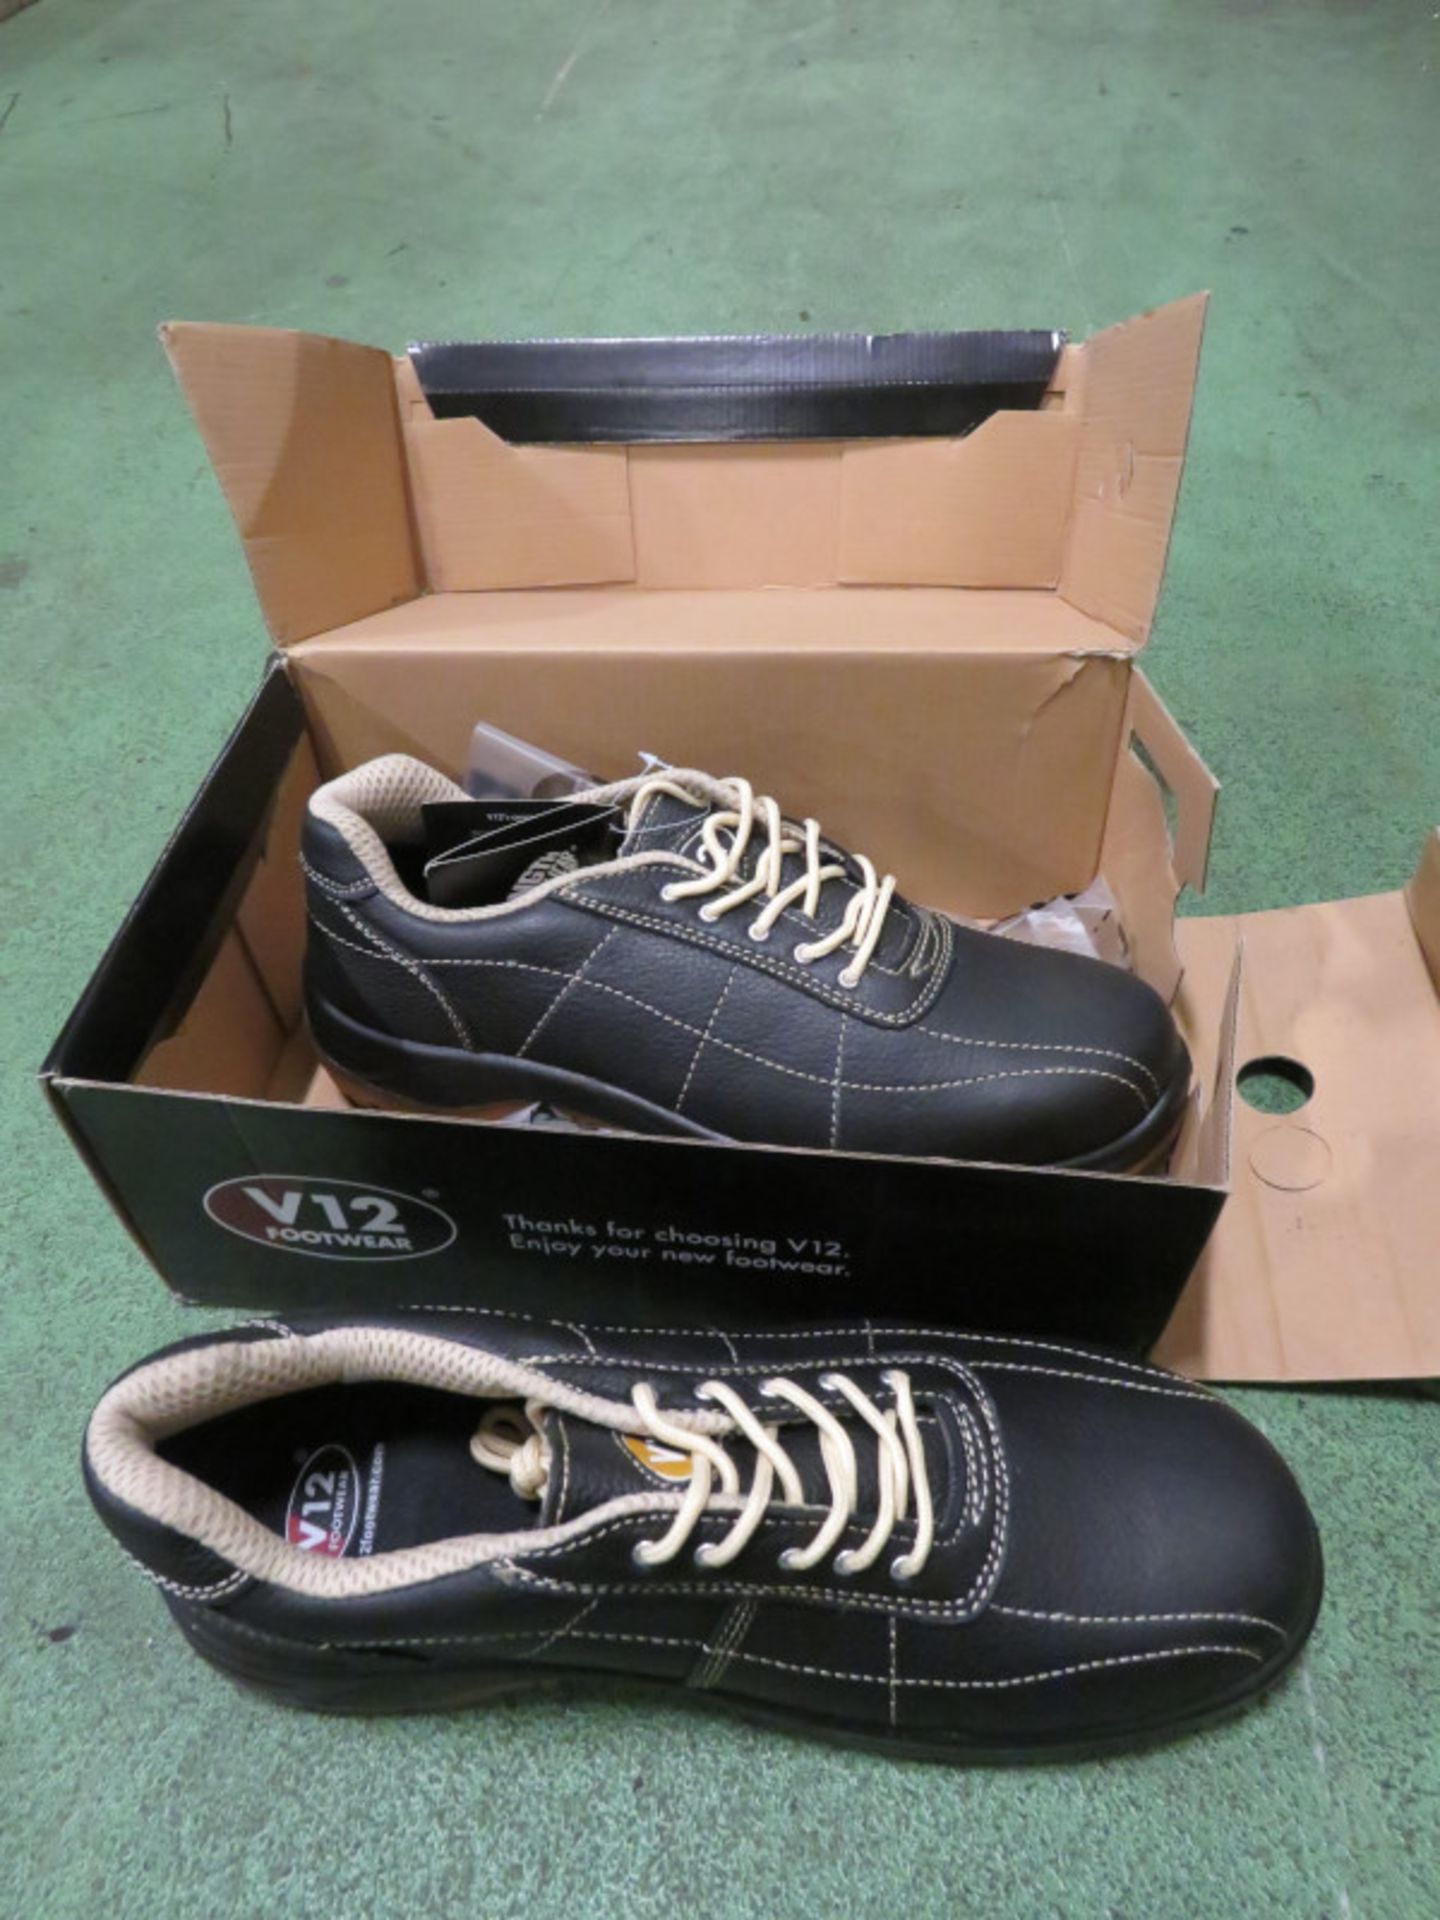 V12 Footwear safety shoe VR660 plumber - 11UK 46euro - Image 2 of 2